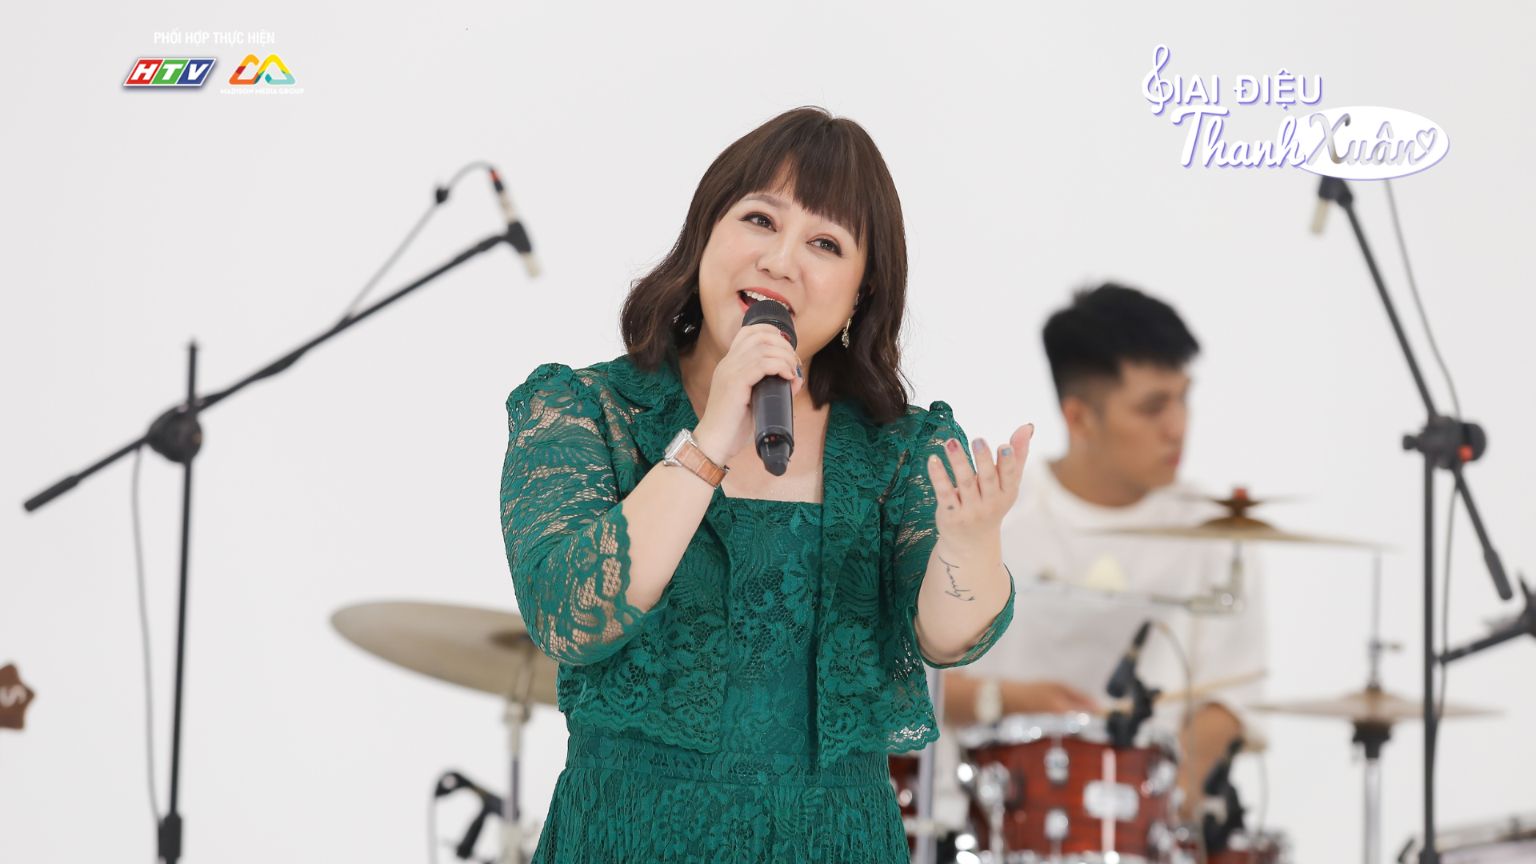 Giai Điệu Thanh Xuân 1 Phương Anh Idol kể lại giai đoạn bị bạo lực học đường